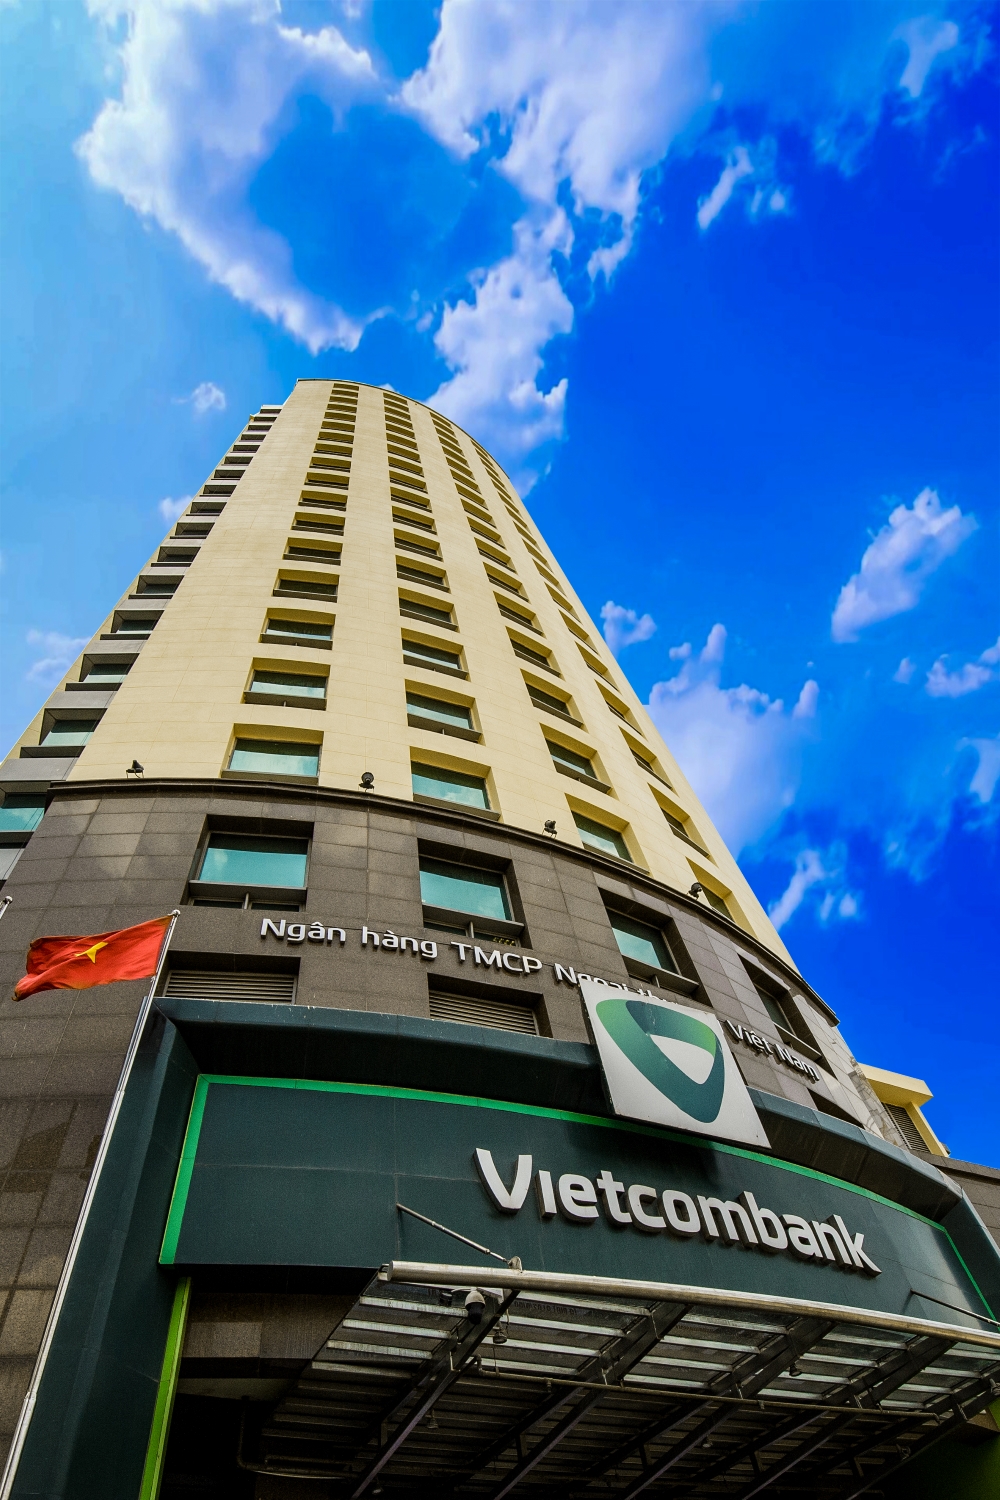 Kinh doanh - Vietcombank lần thứ 6 liên tiếp được vinh danh Giải thưởng Ngân hàng mạnh nhất Việt Nam do The Asian Banker trao tặng